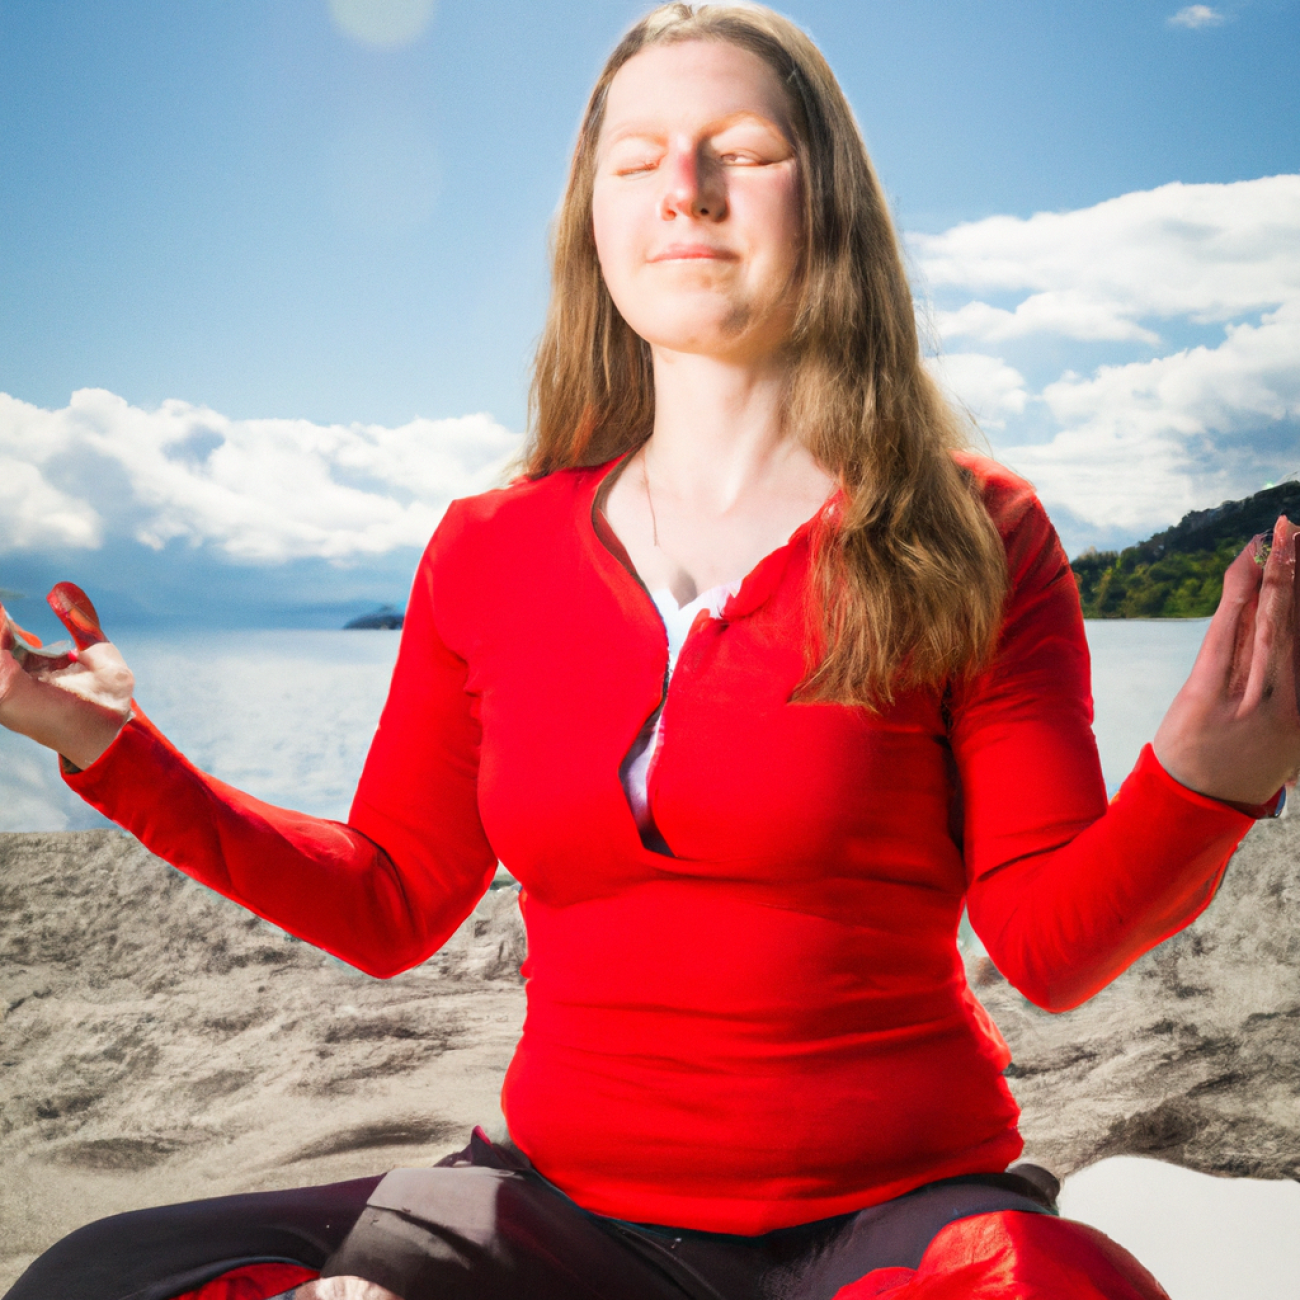 5. Doporučení pro zlepšení hormonálního zdraví: Začleňte meditaci ve Vederu do svého každodenního života